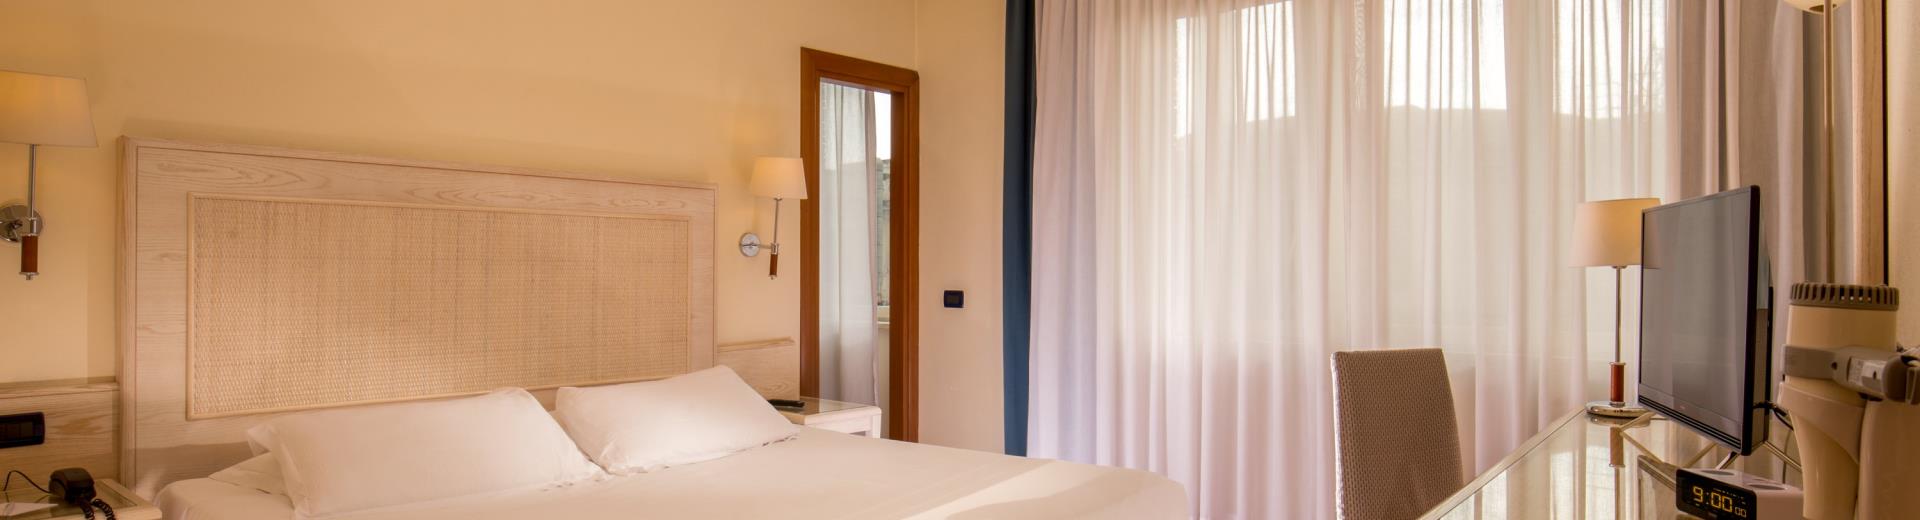 Se anche in vacanza non vuoi rinunciare al comfort e al relax, scegli il BW Globus Hotel Roma, a soli 2 passi dal centro storico.